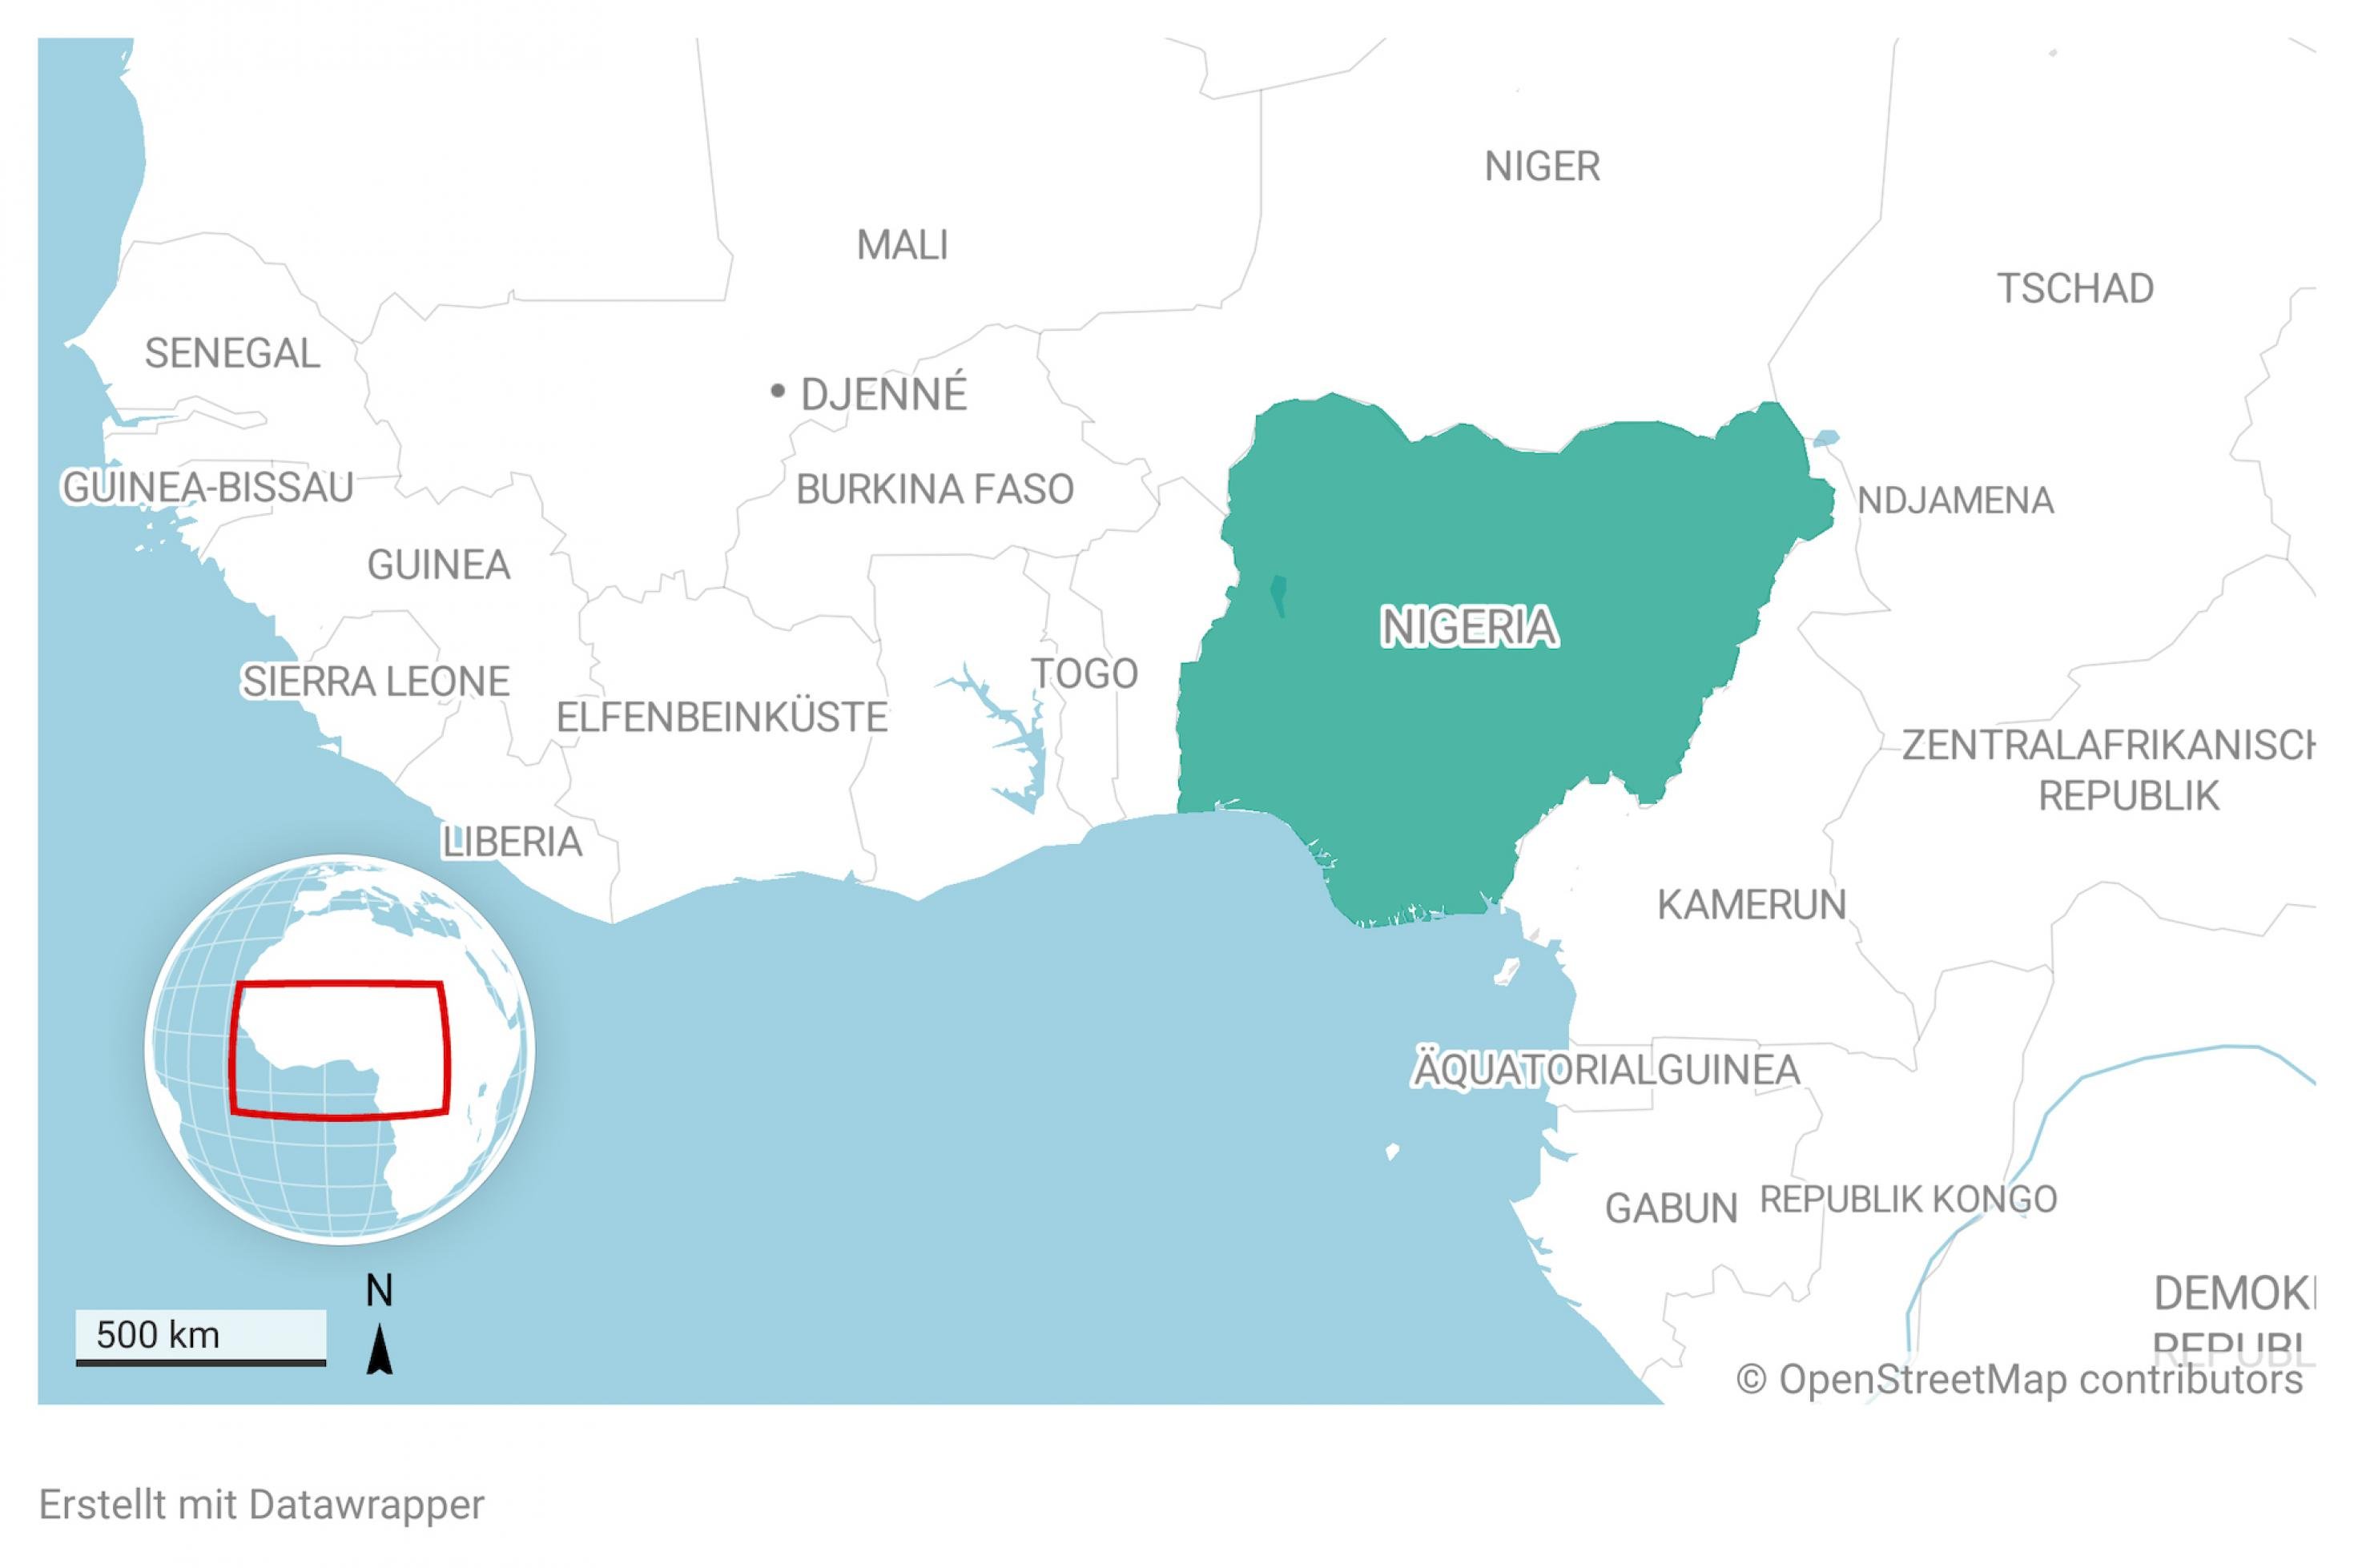 Ausschnitt aus einer Landkarte von Afrika. Das Land Nigeria ist farblich hervorgehoben.